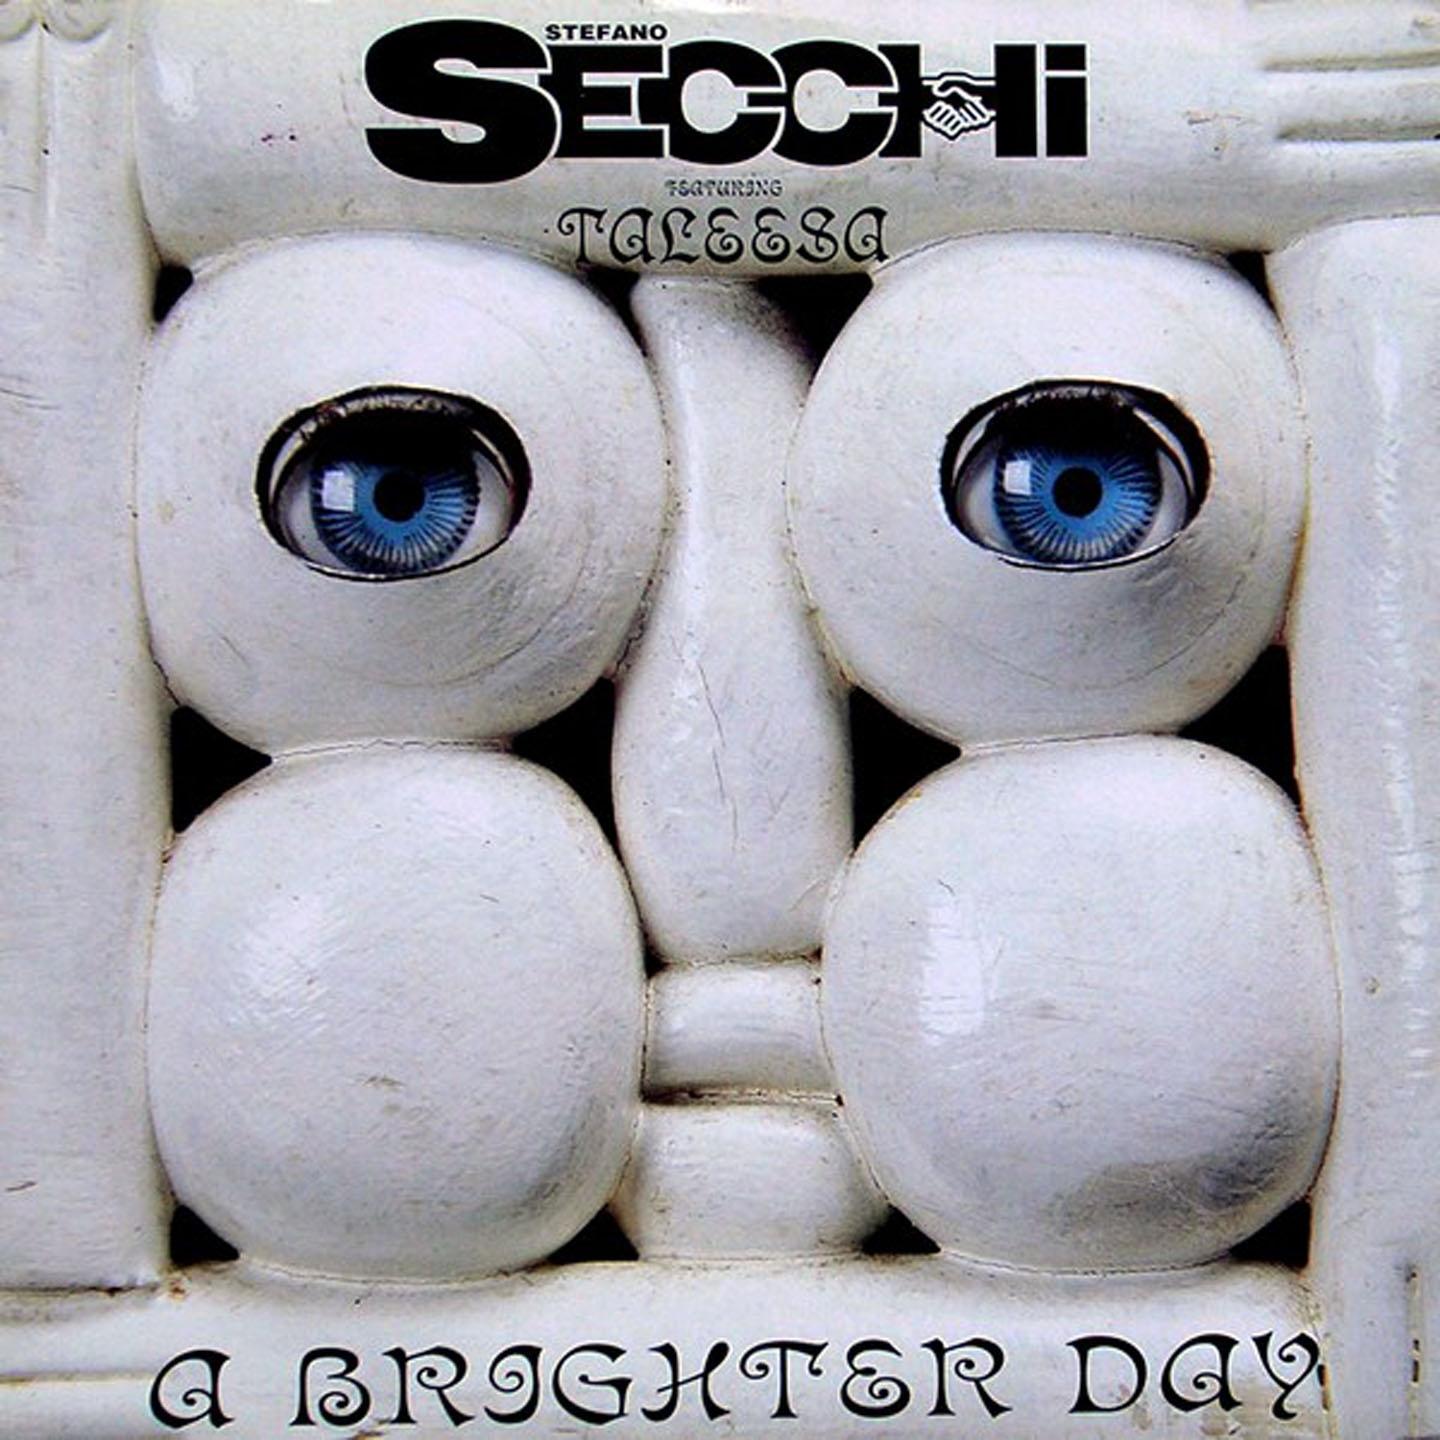 Stefano Secchi - A Brighter Day (Acappella)